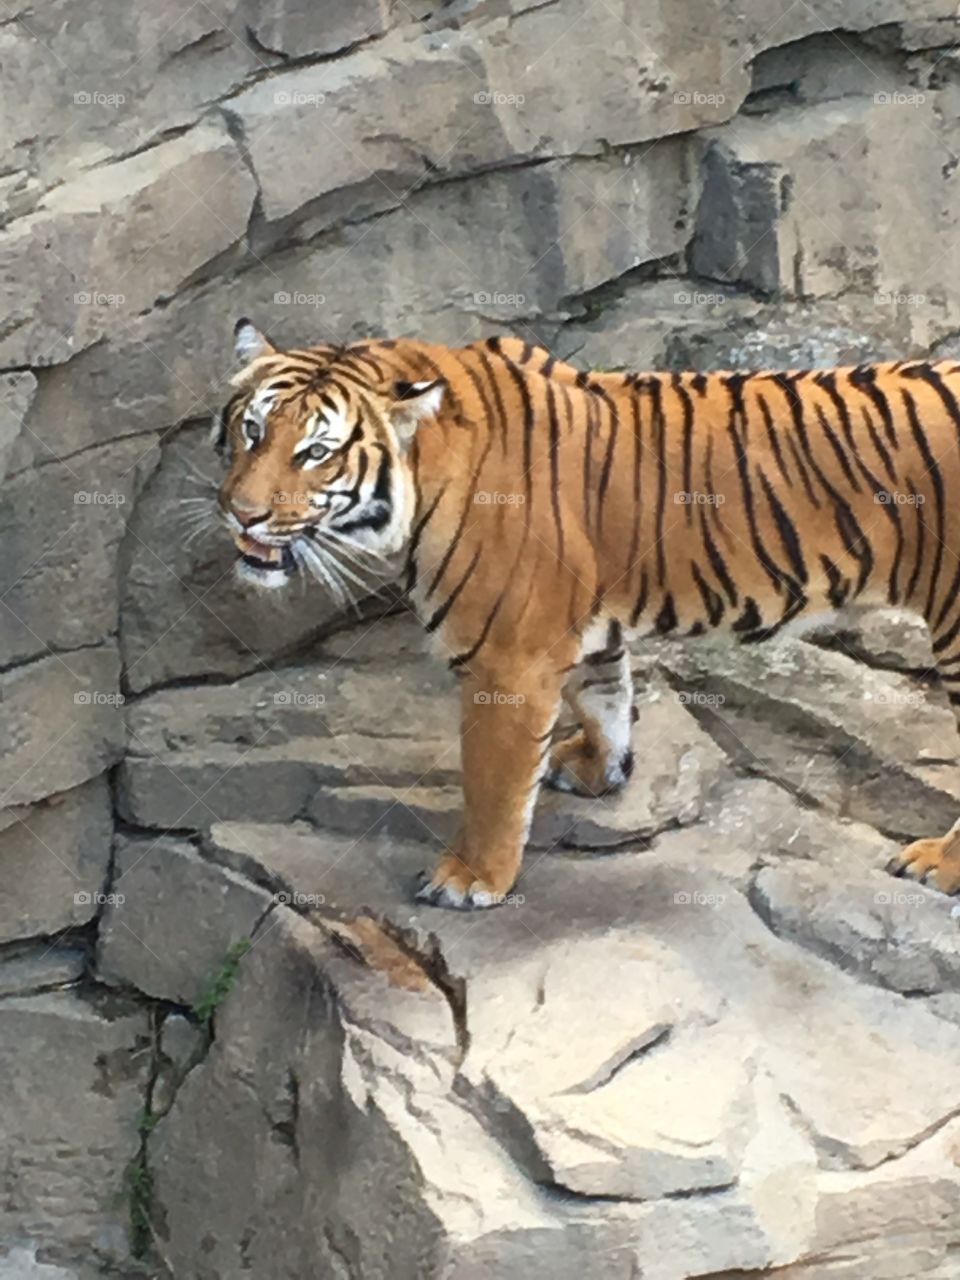 Tiger temper